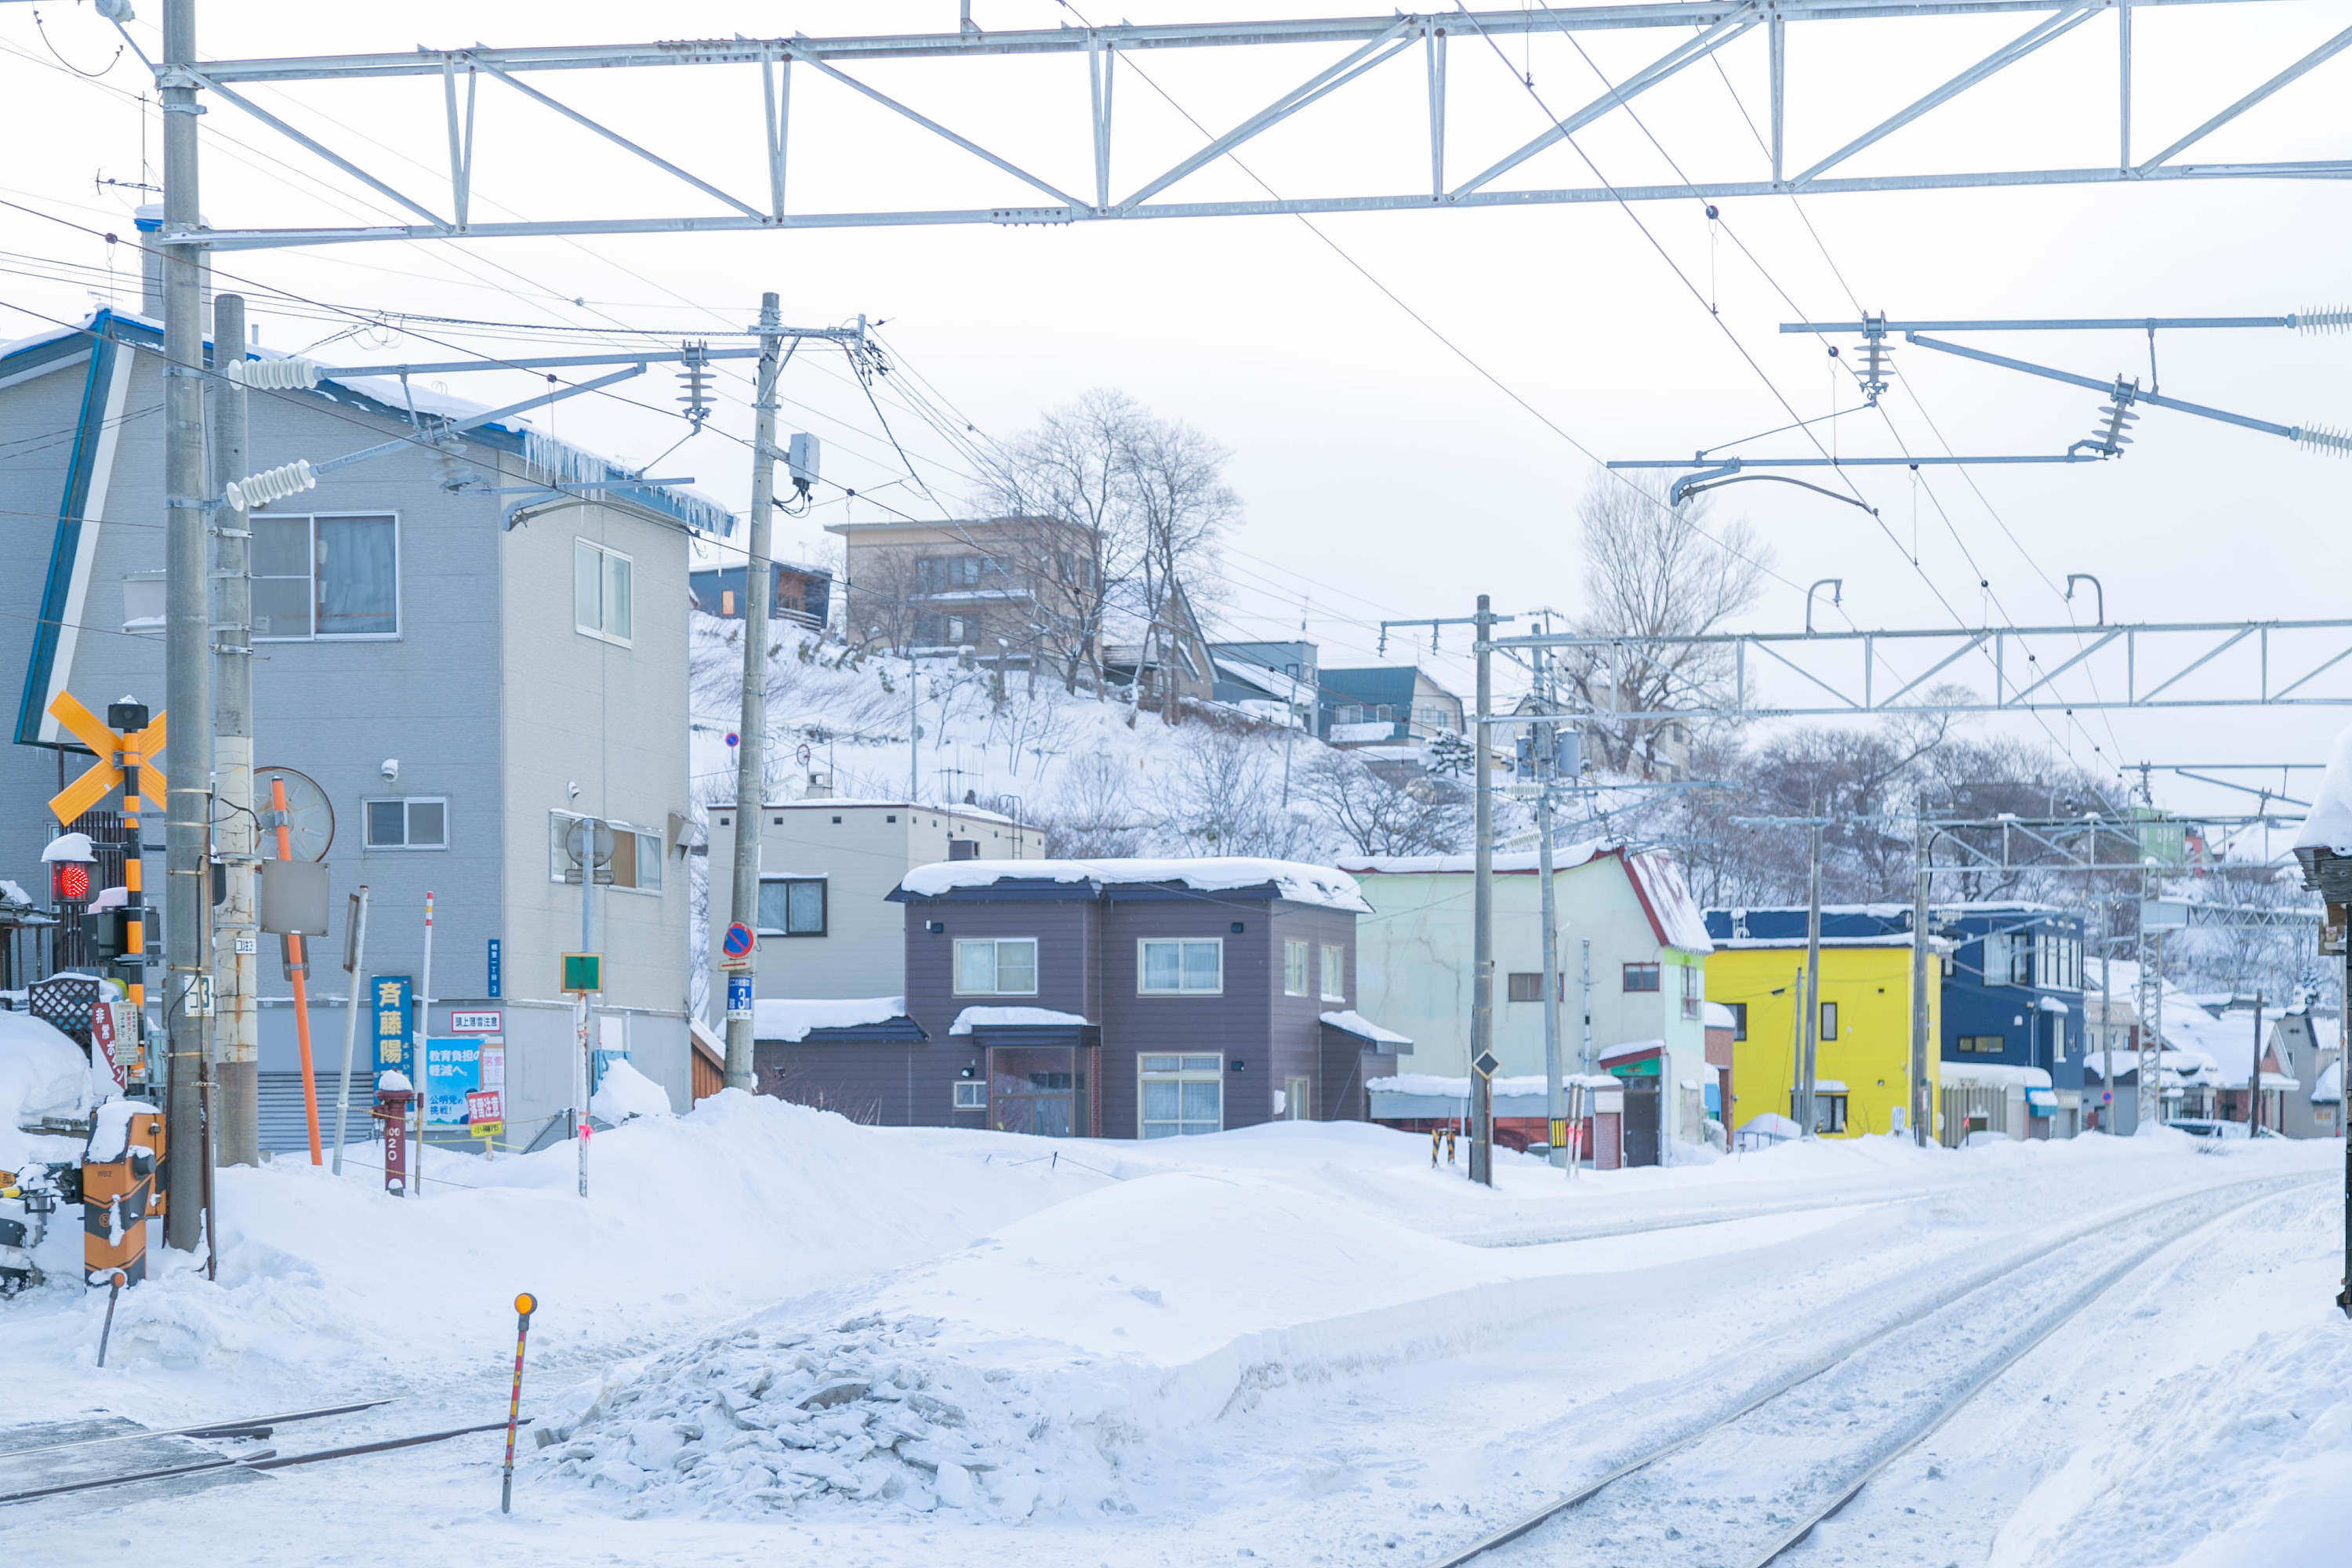 冬季去北海道玩有哪些极具特色的东西可以体验？ - 知乎